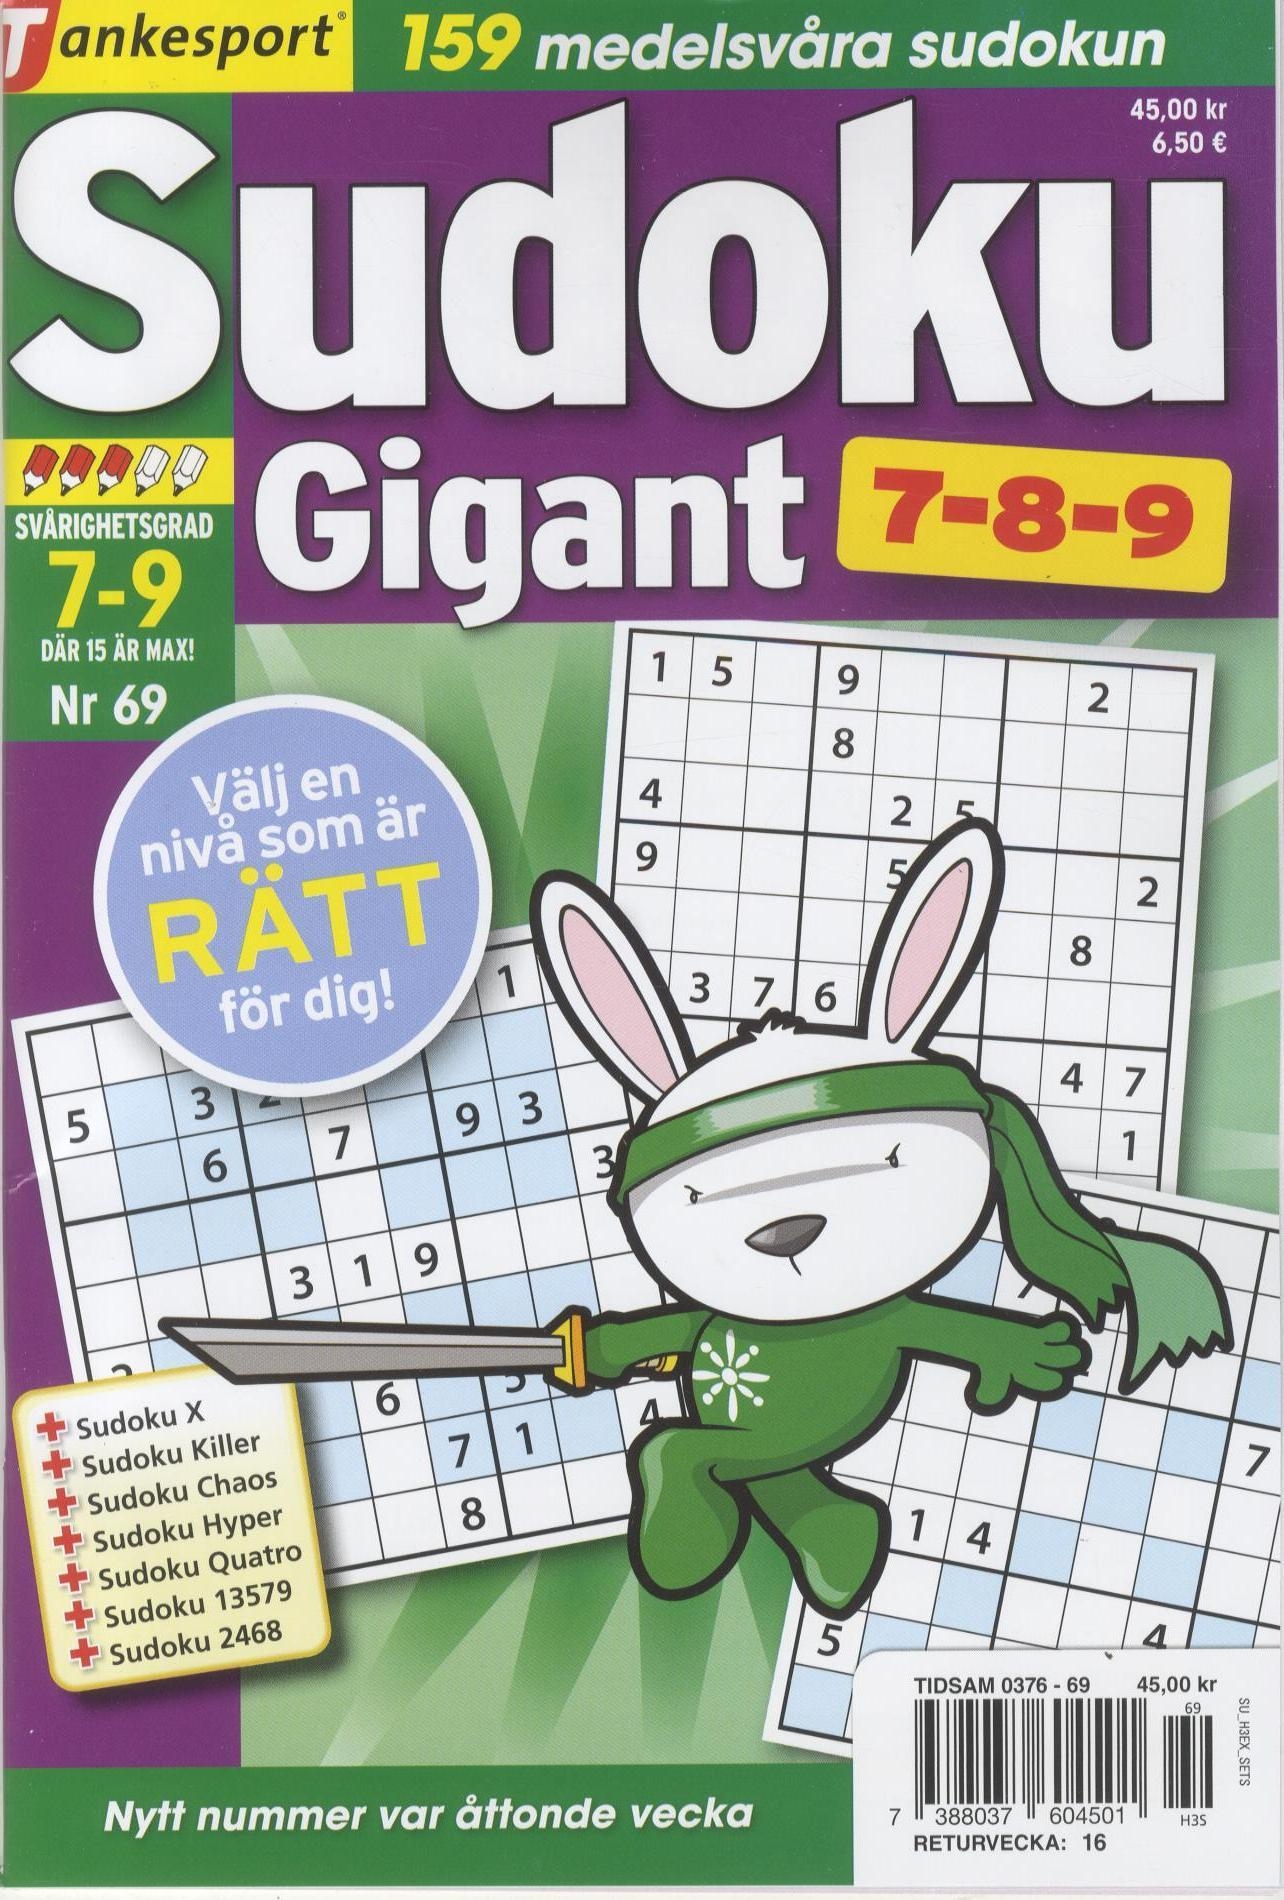 TS Sudoku 7-8-9 Gigant